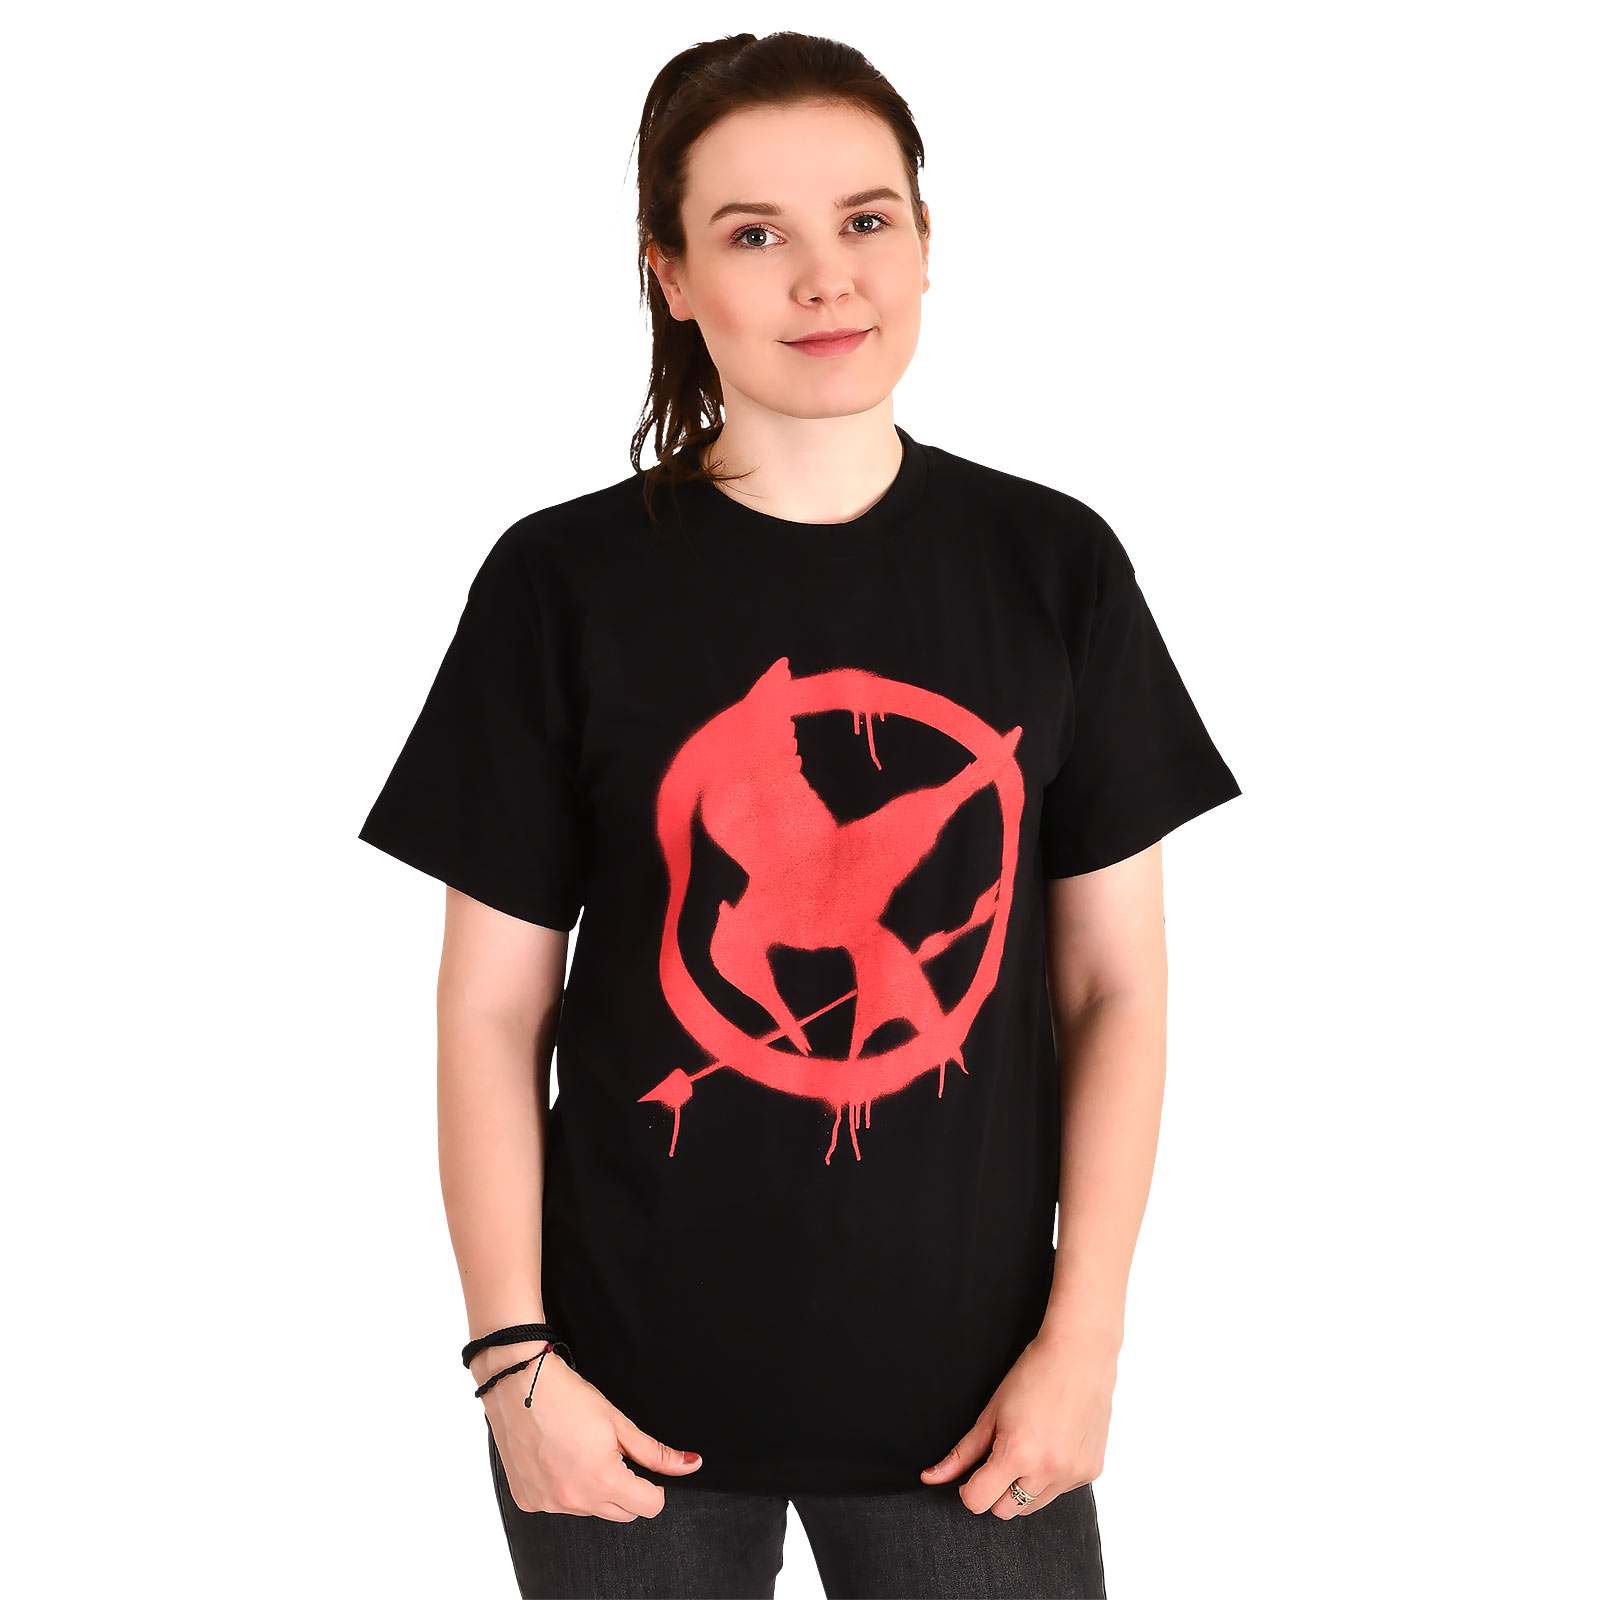 Tribute von Panem - Spotttölpel Symbol T-Shirt schwarz